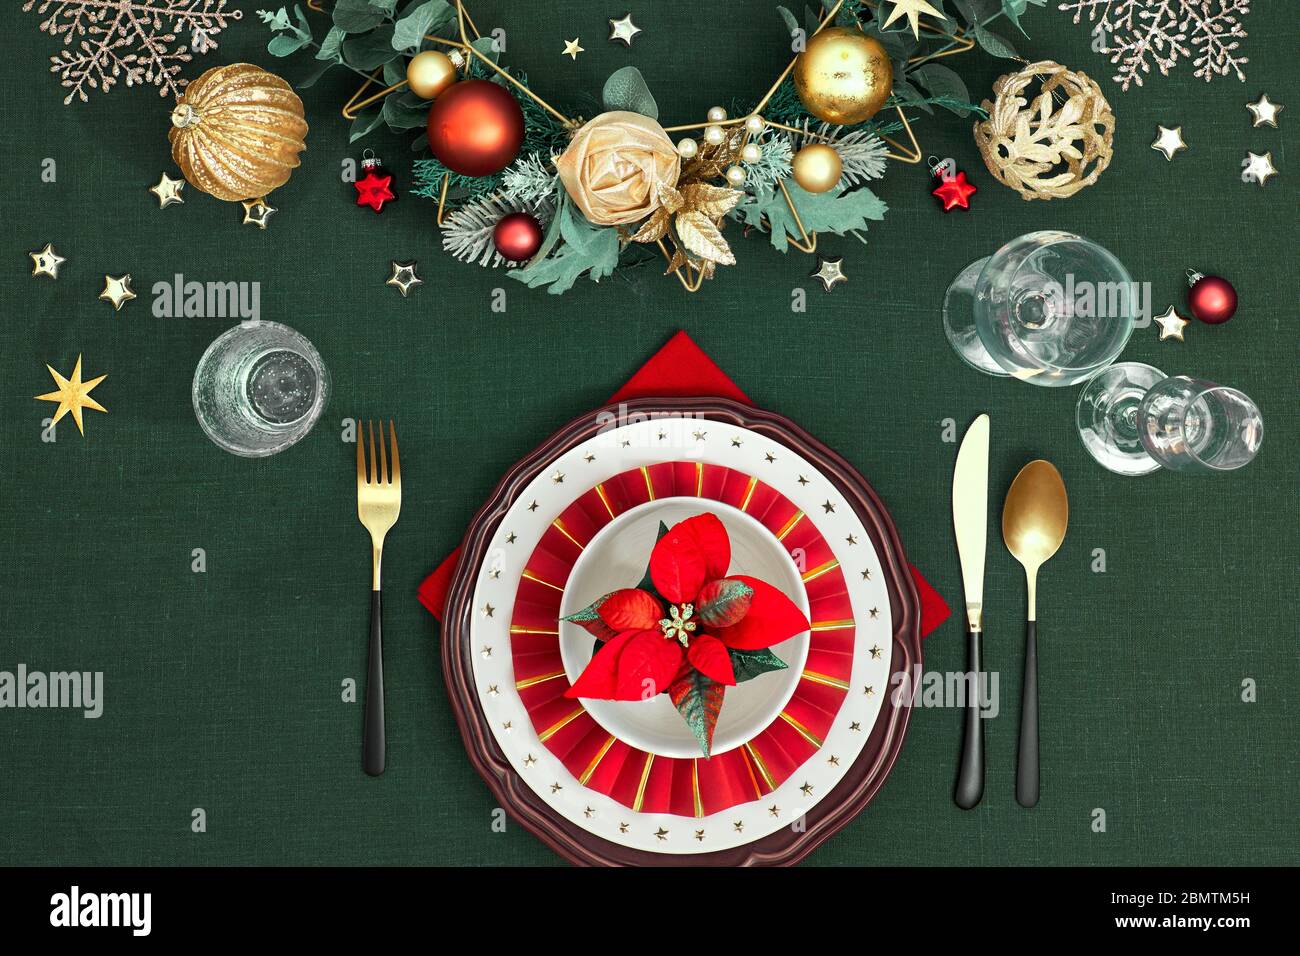 Tavola di Natale messa a punto con piatti rossi bianchi scuri, anello di carta rosso e poinsettia, utensili d'oro. Decorazioni dorate rosse, verdi e dorate. Disposizione piatta, Foto Stock